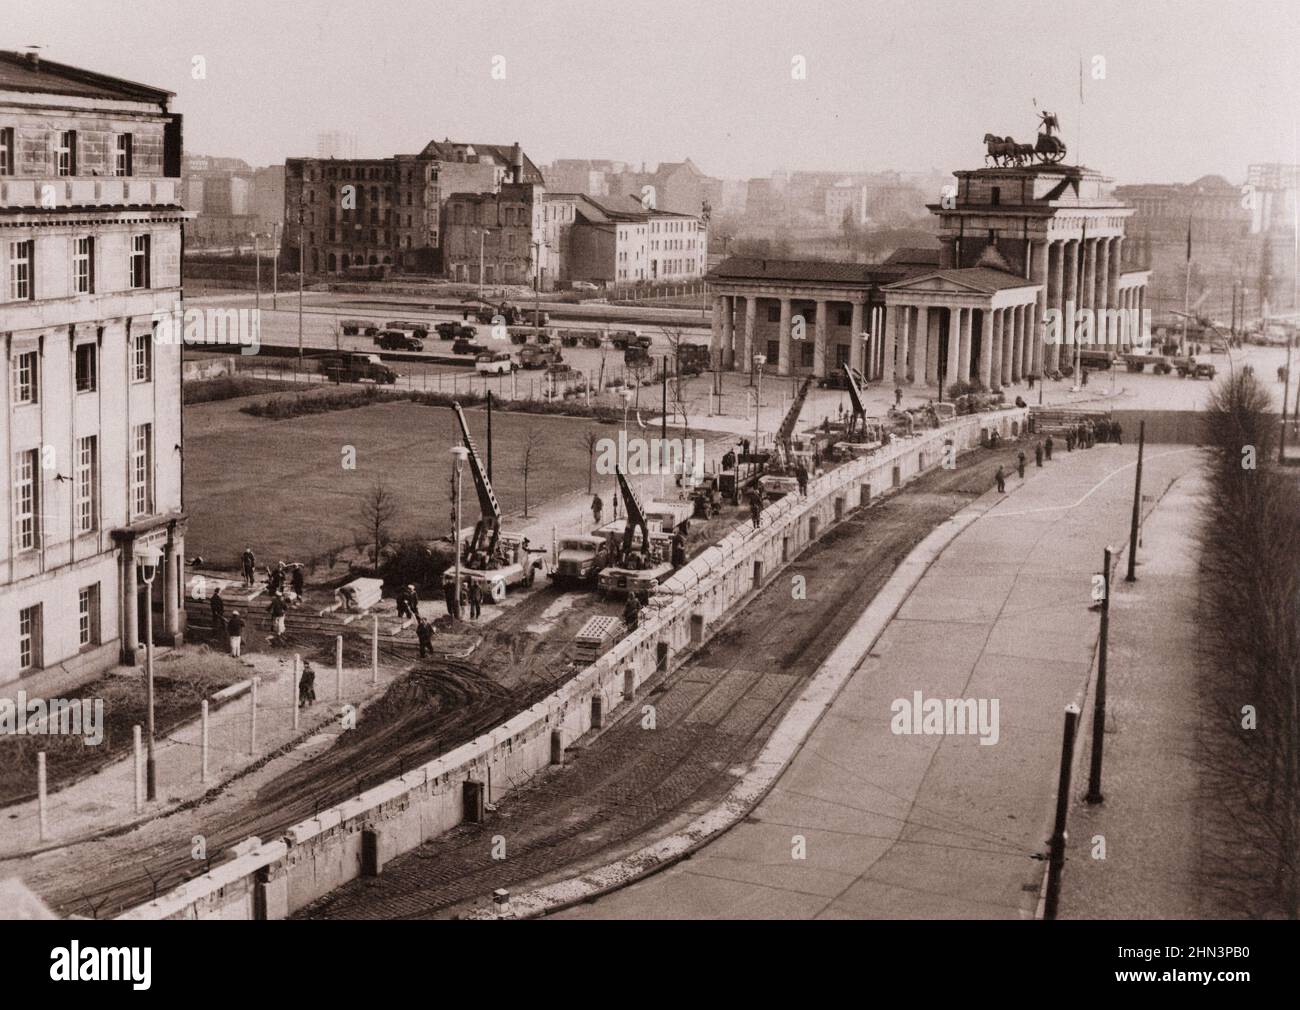 Vintage-Foto der Berliner Krise von 1961: Mauerbau Berliner Mauer verstärkt. Unter den wachsamen Augen der kommunistischen Polizei waren ostdeutsche Arbeiter in der Nähe Stockfoto